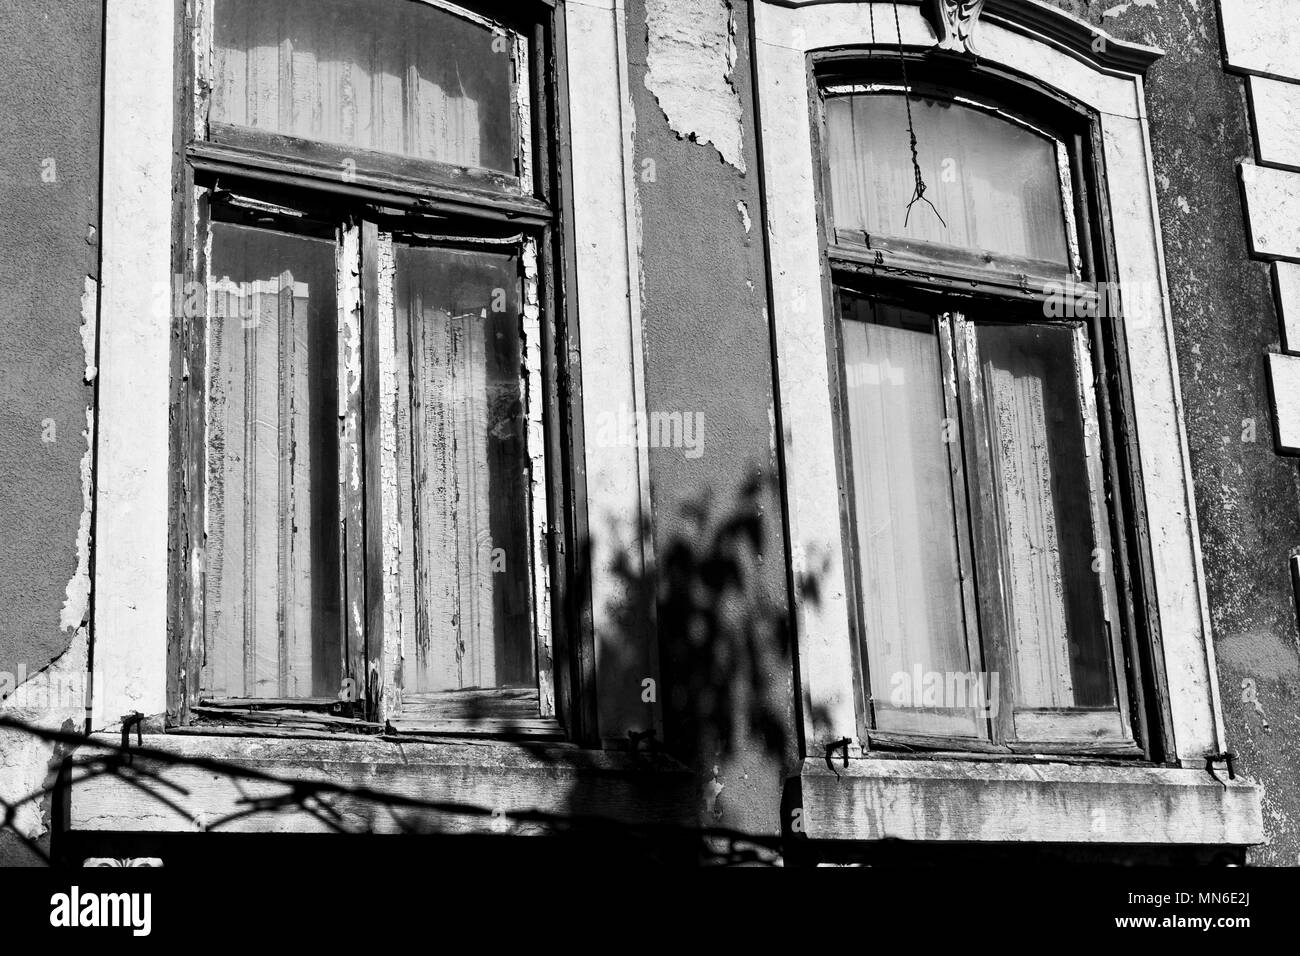 Zerstörten alten Windows in Schwarz und Weiß Foto Stockfoto